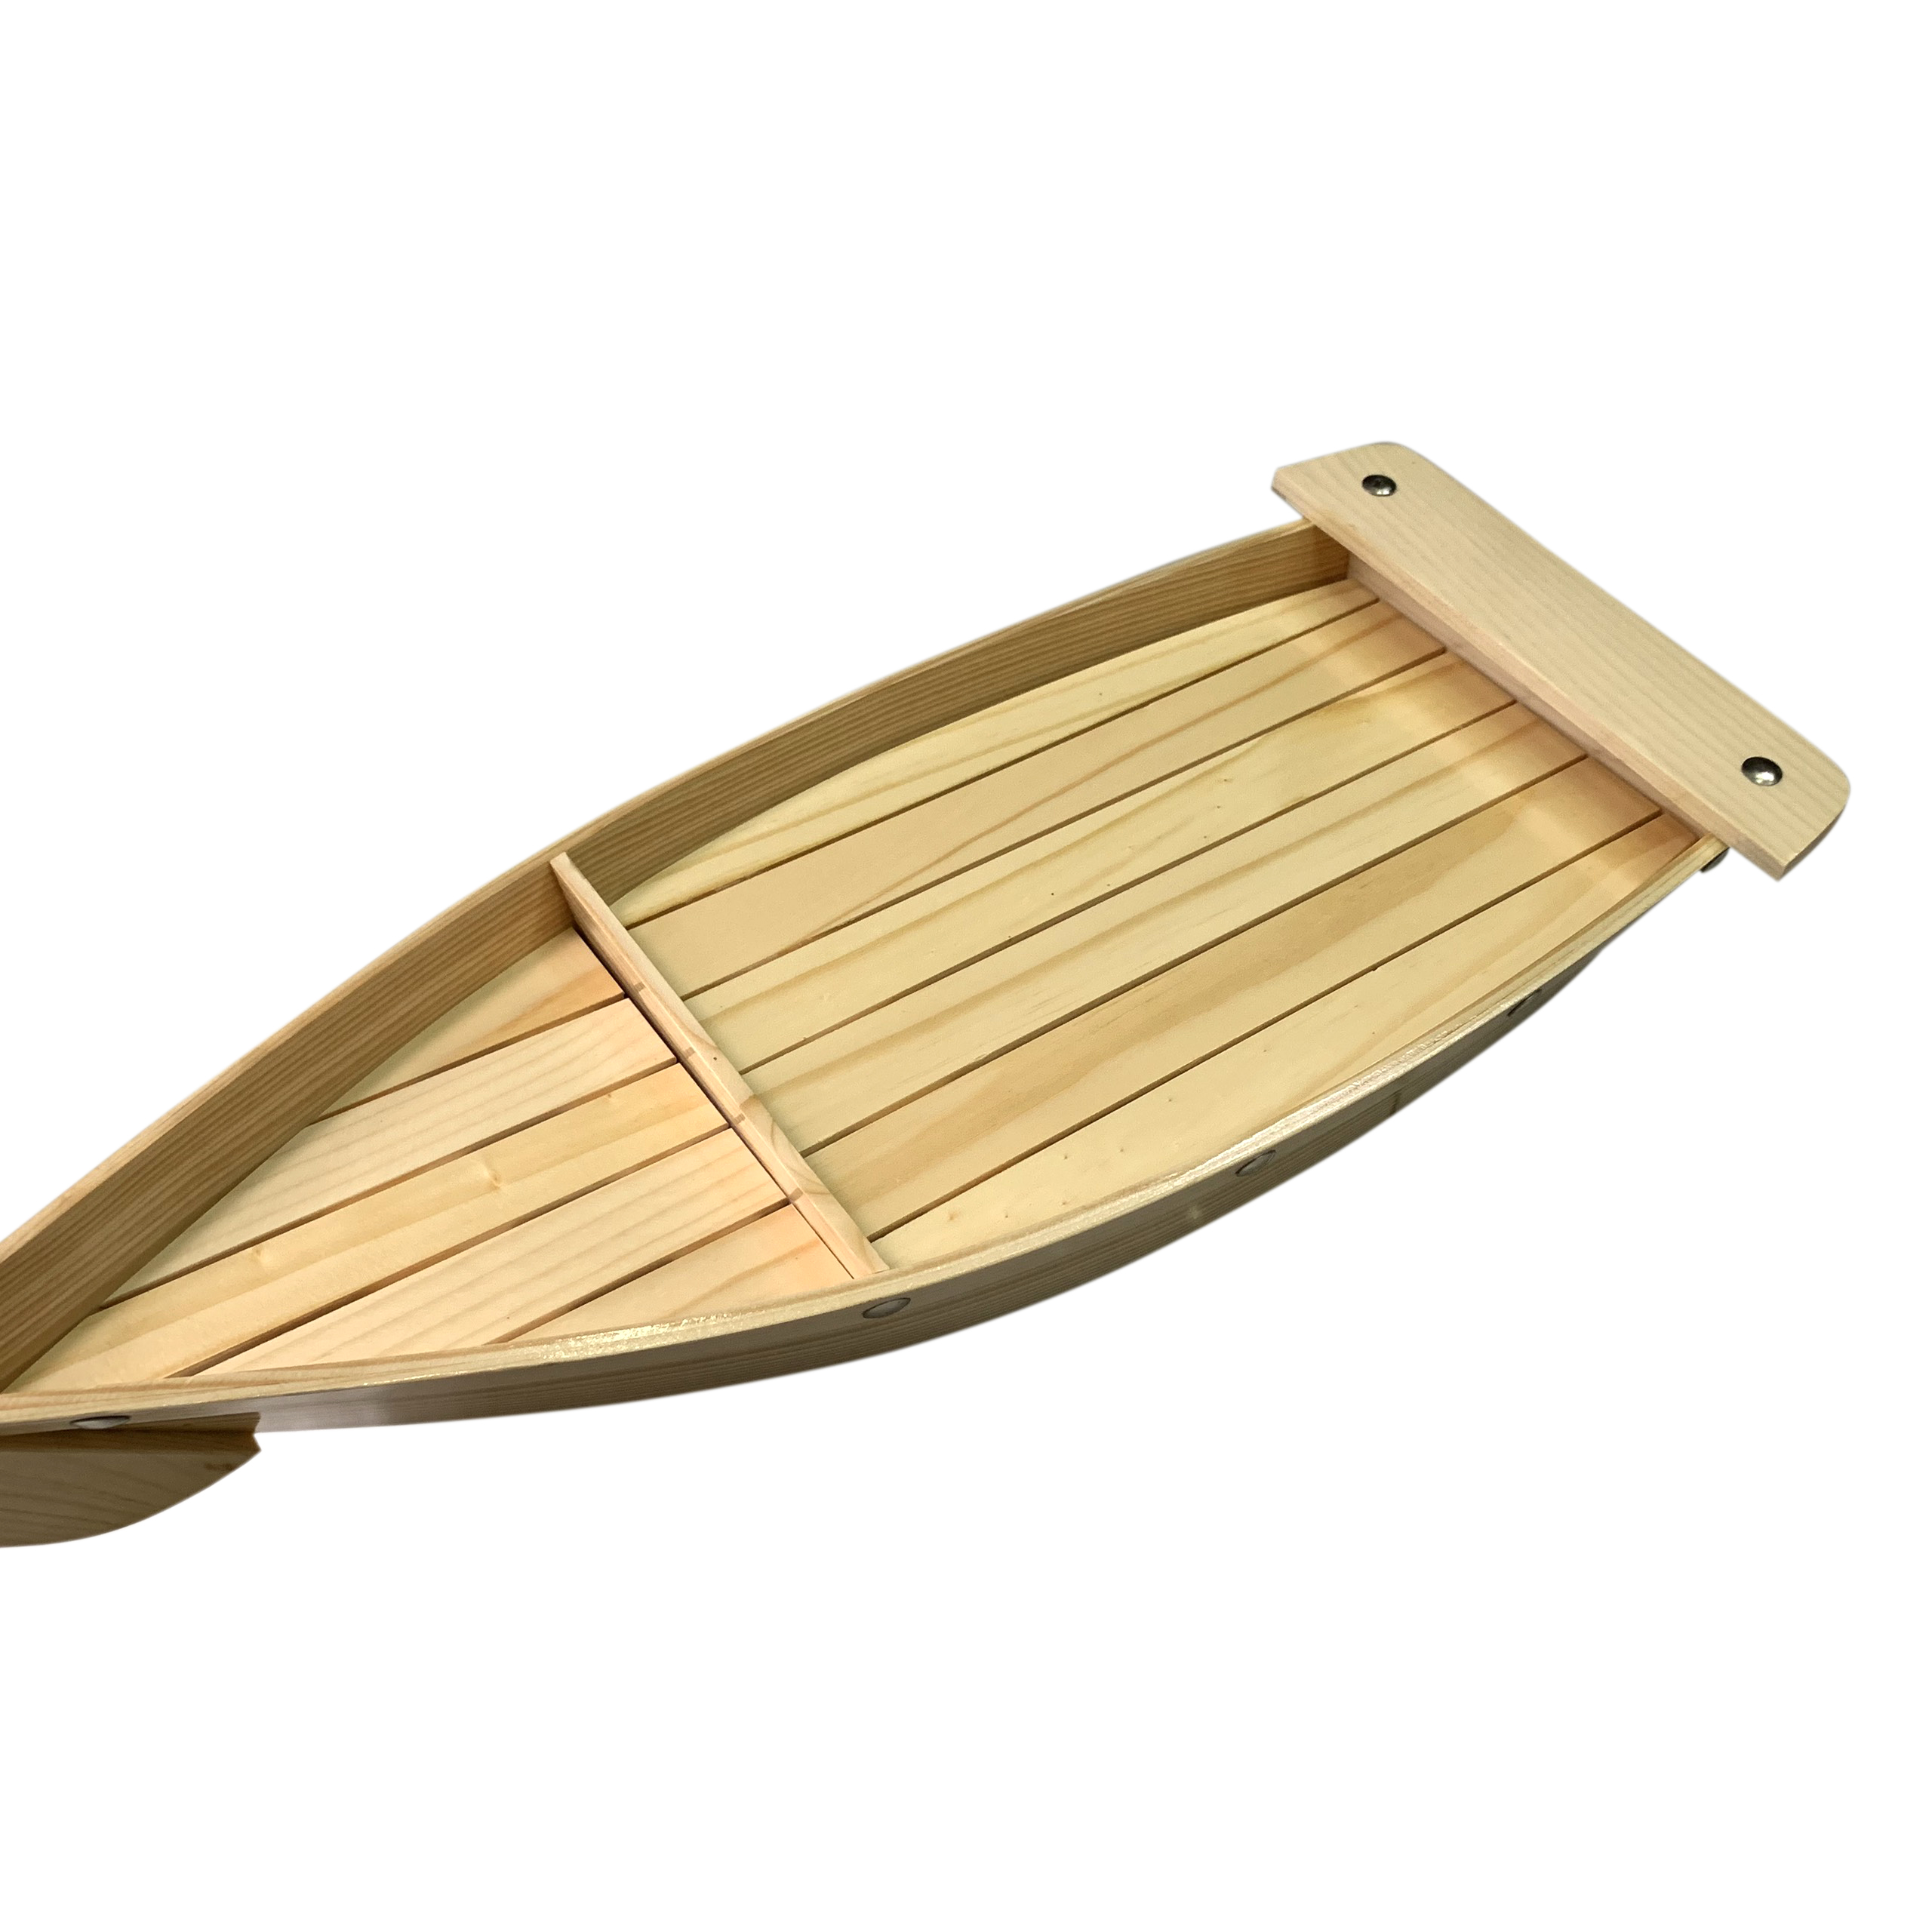 Khay thuyền gỗ trang trí món ăn thuyền gỗ Sushi & Sashimi Nhật Bản - Dài 58cm - Gỗ Thông Tự Nhiên